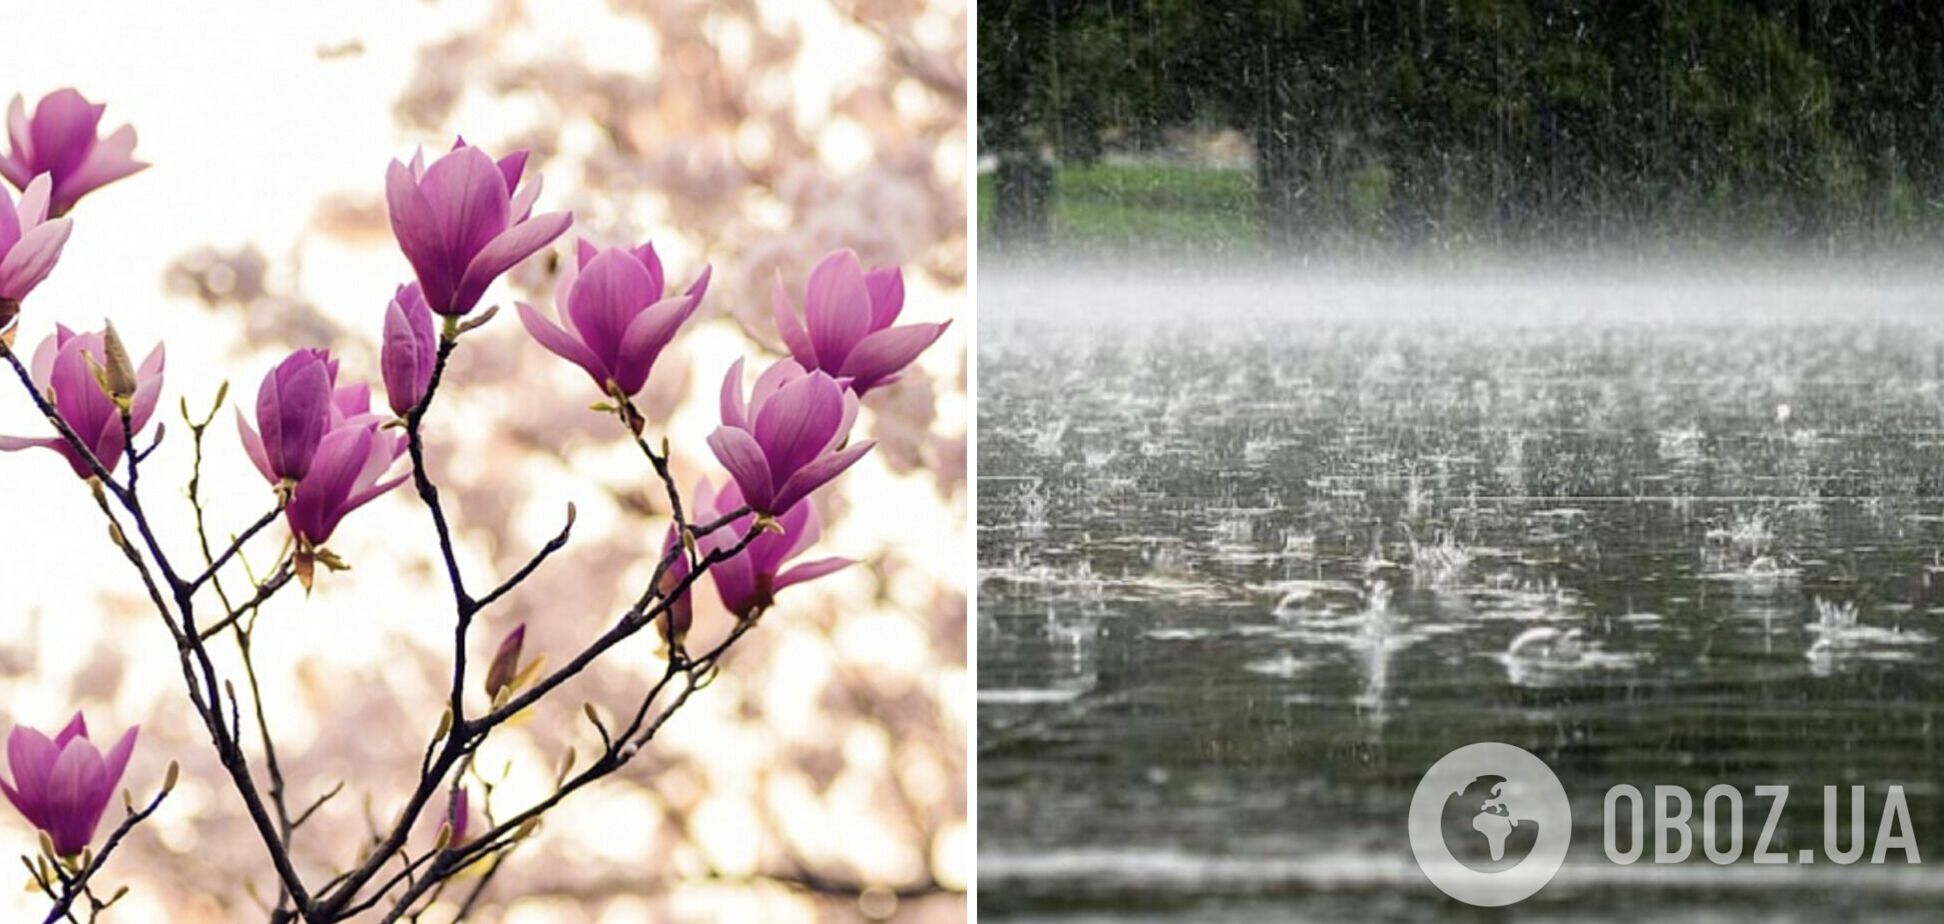 Потеплеет до +26, местами кратковременные дожди: синоптики рассказали, какая будет погода в среду